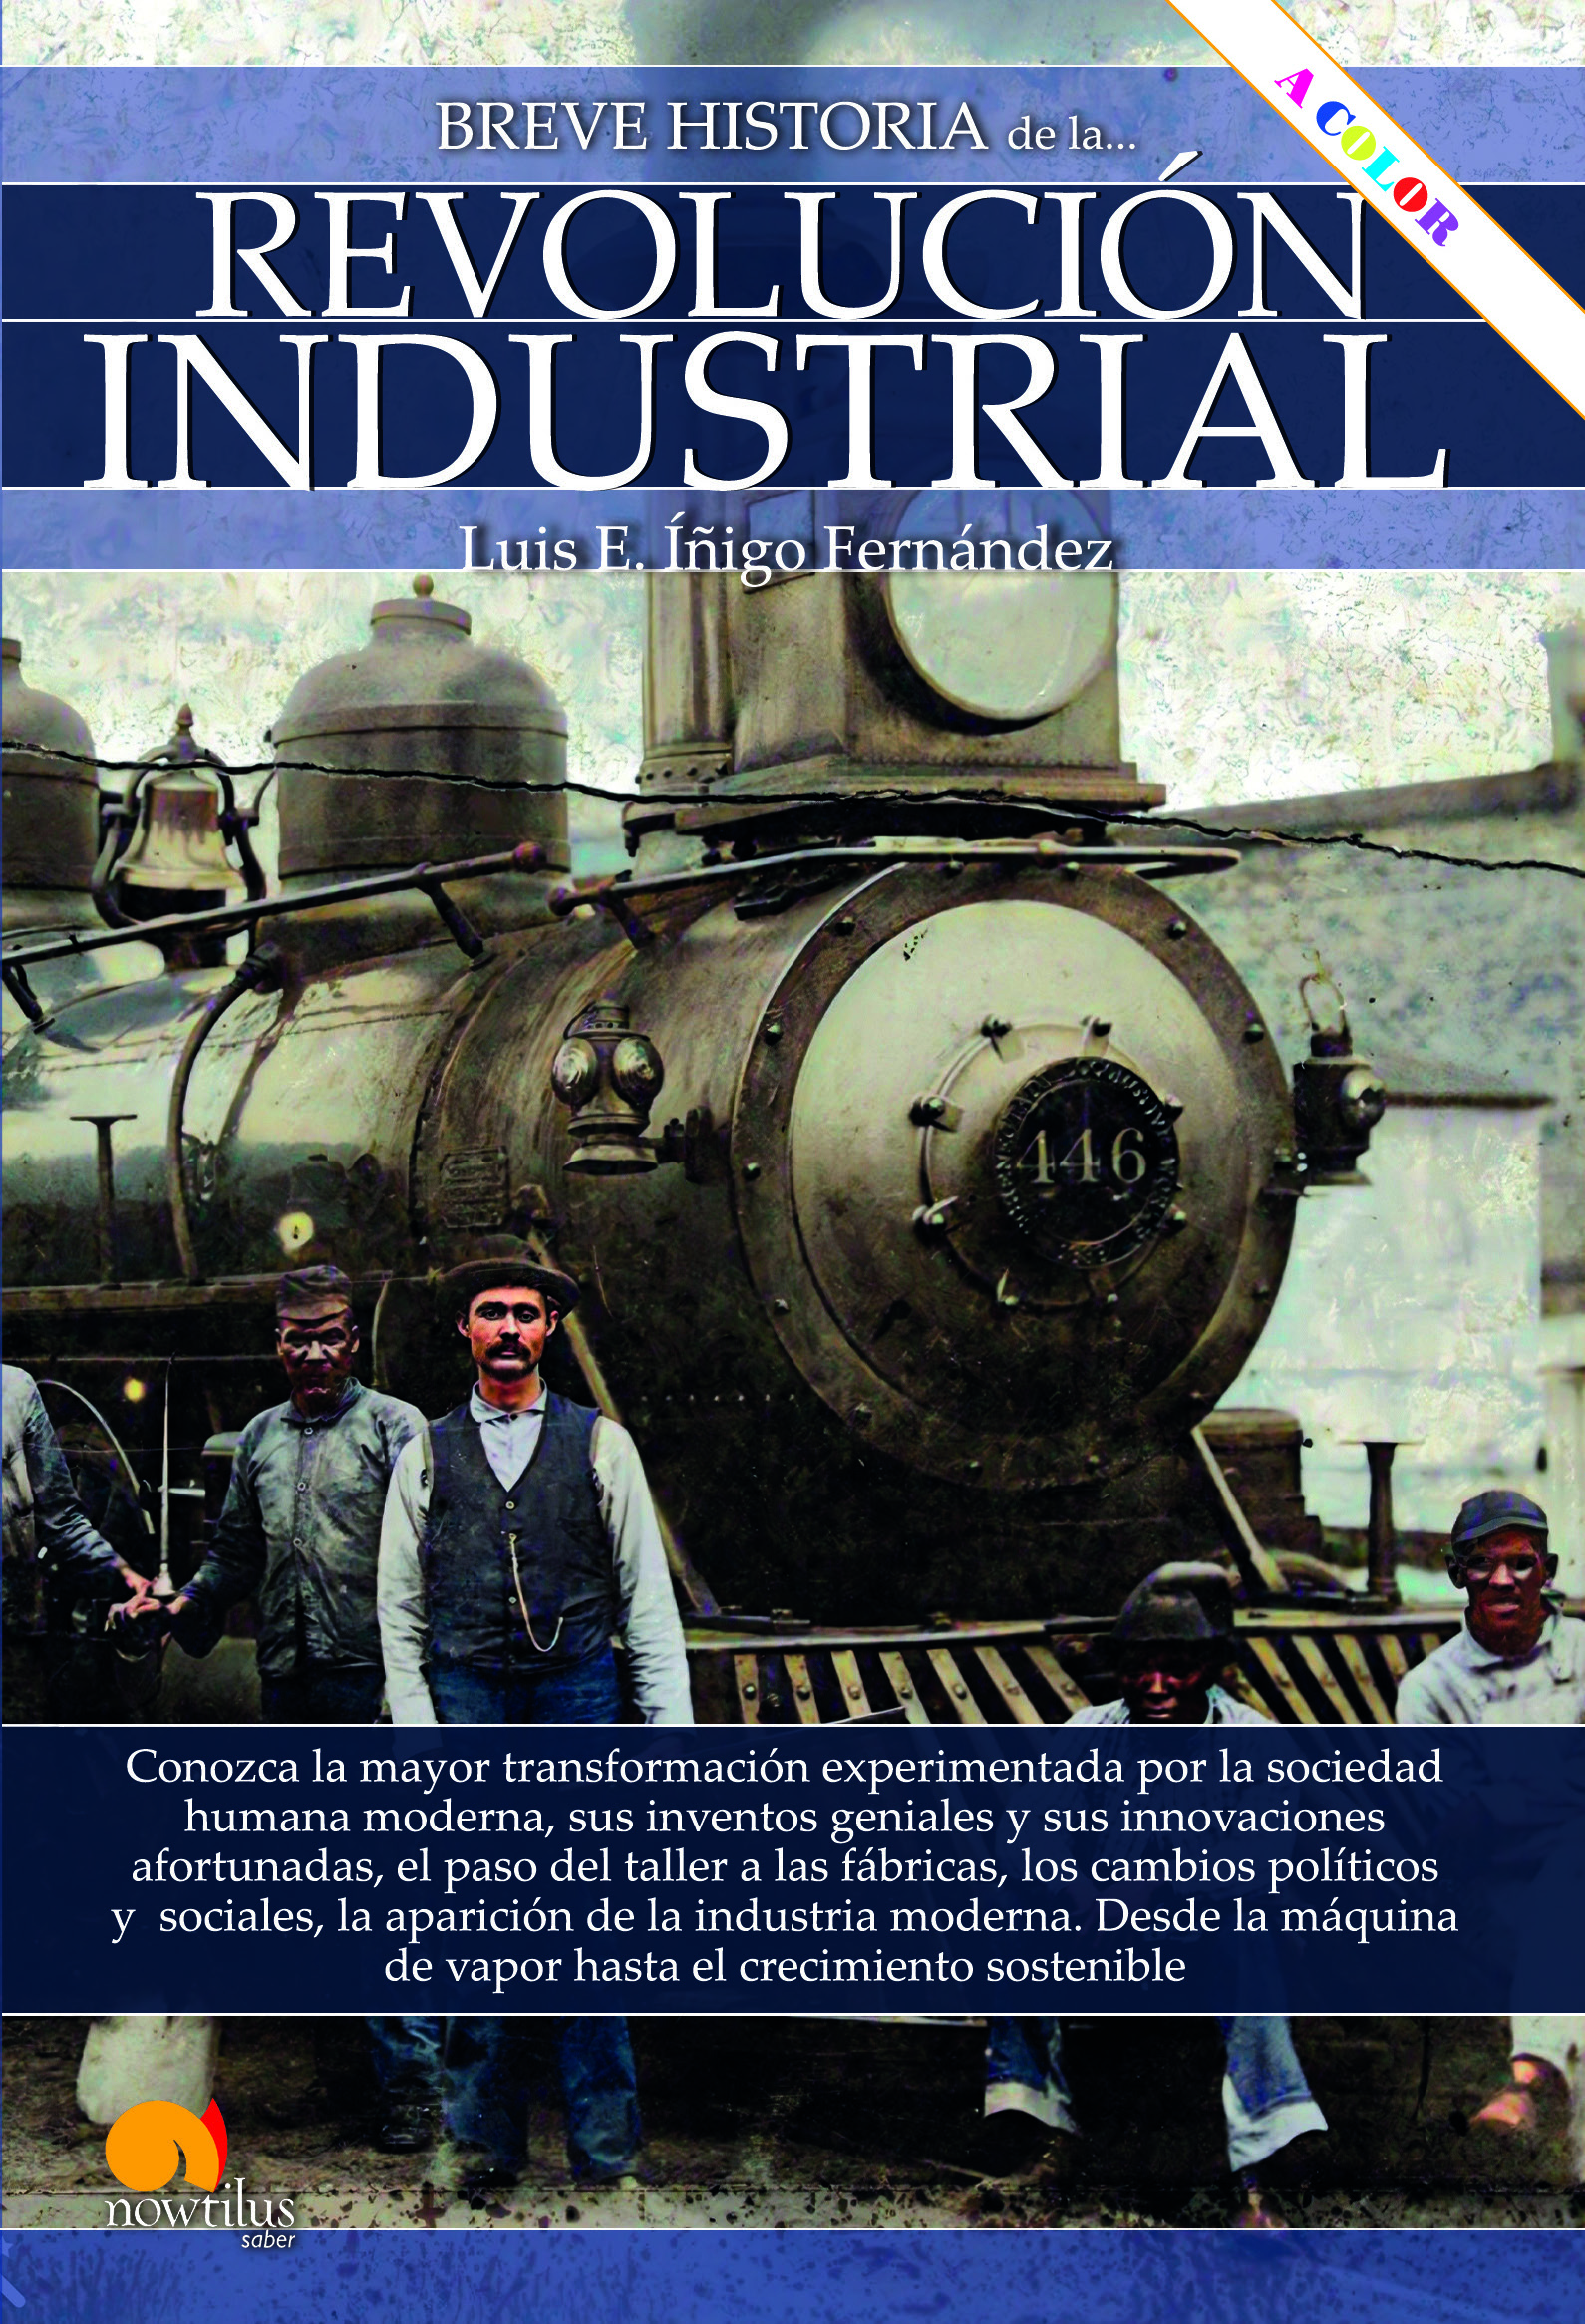 Breve historia de la Revolución industrial n. e. COLOR (9788413052908)